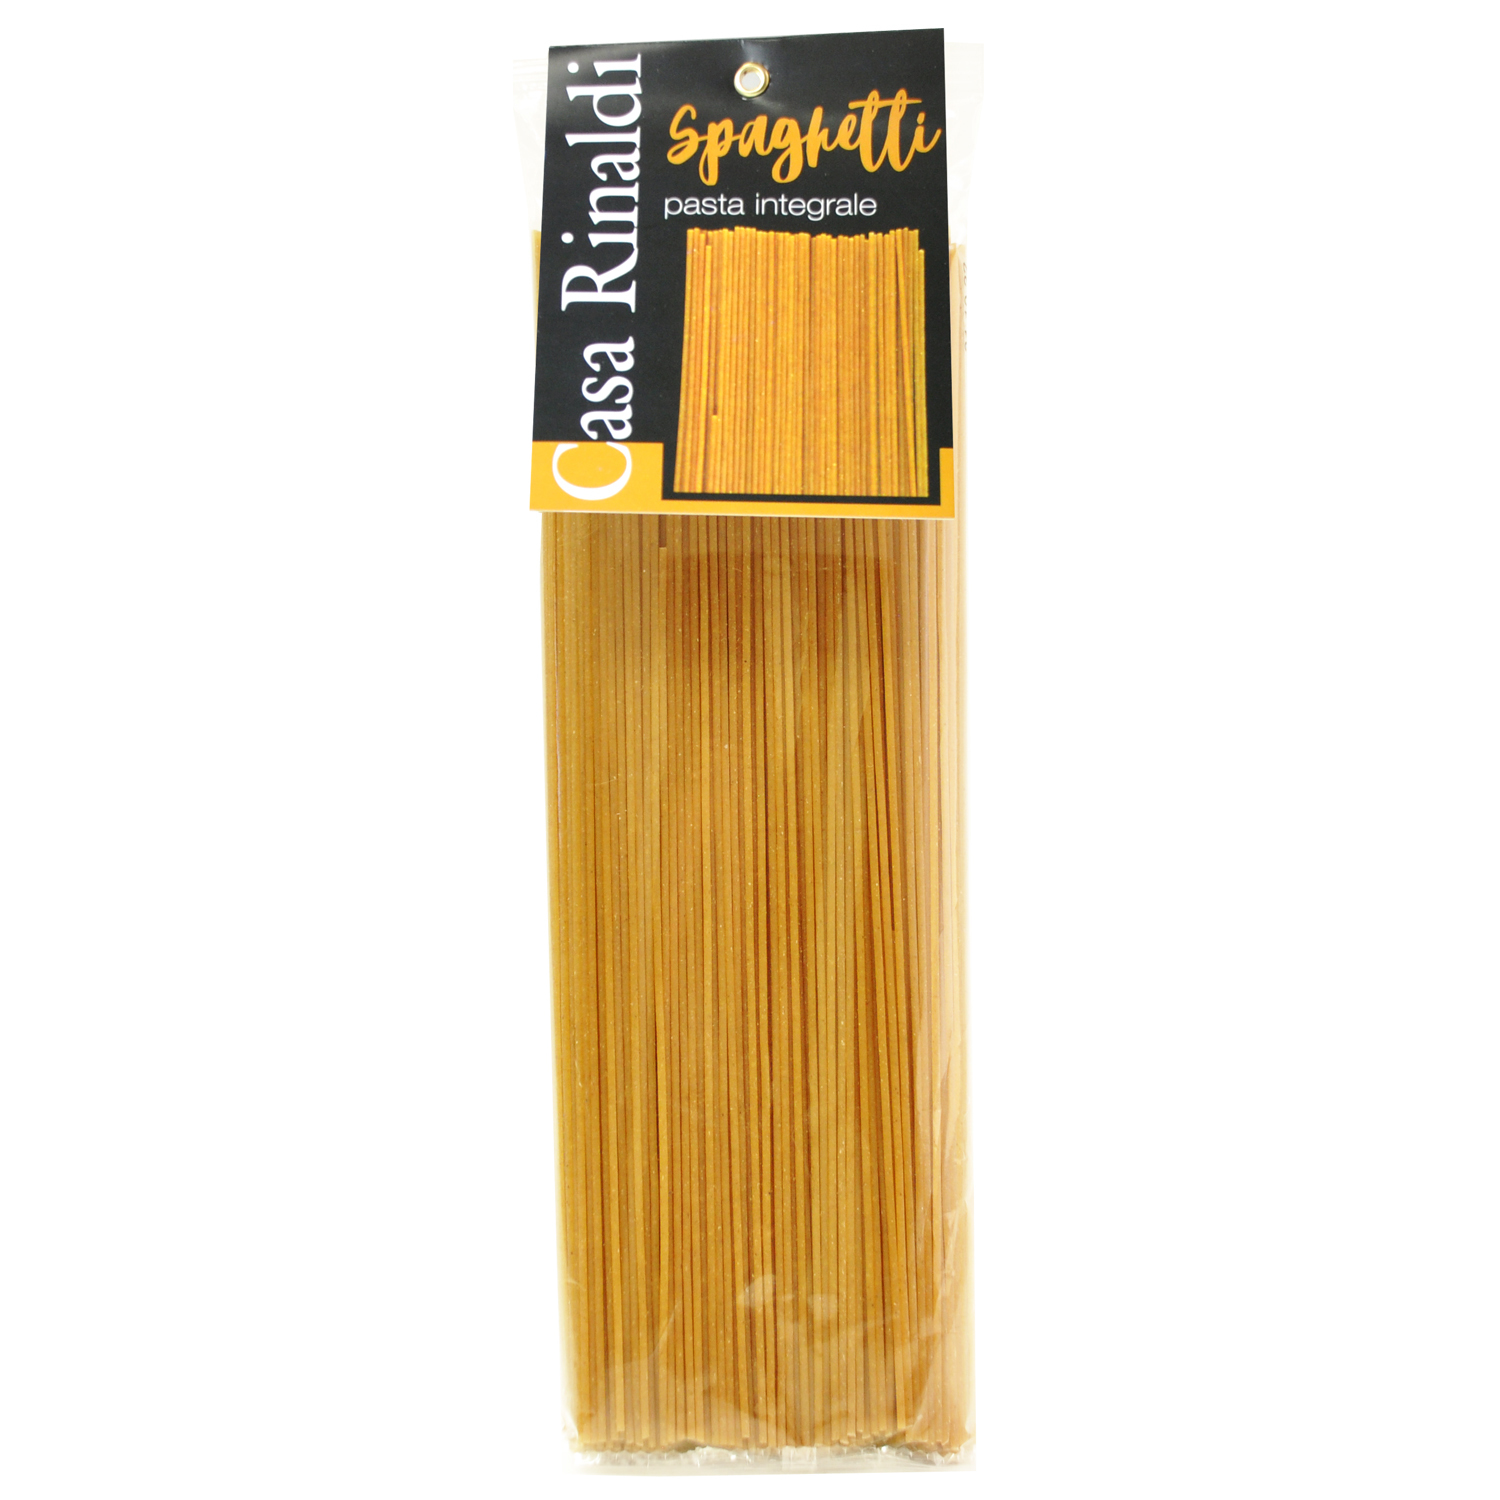 Спагетти Casa Rinaldi из непросеянной муки 500г